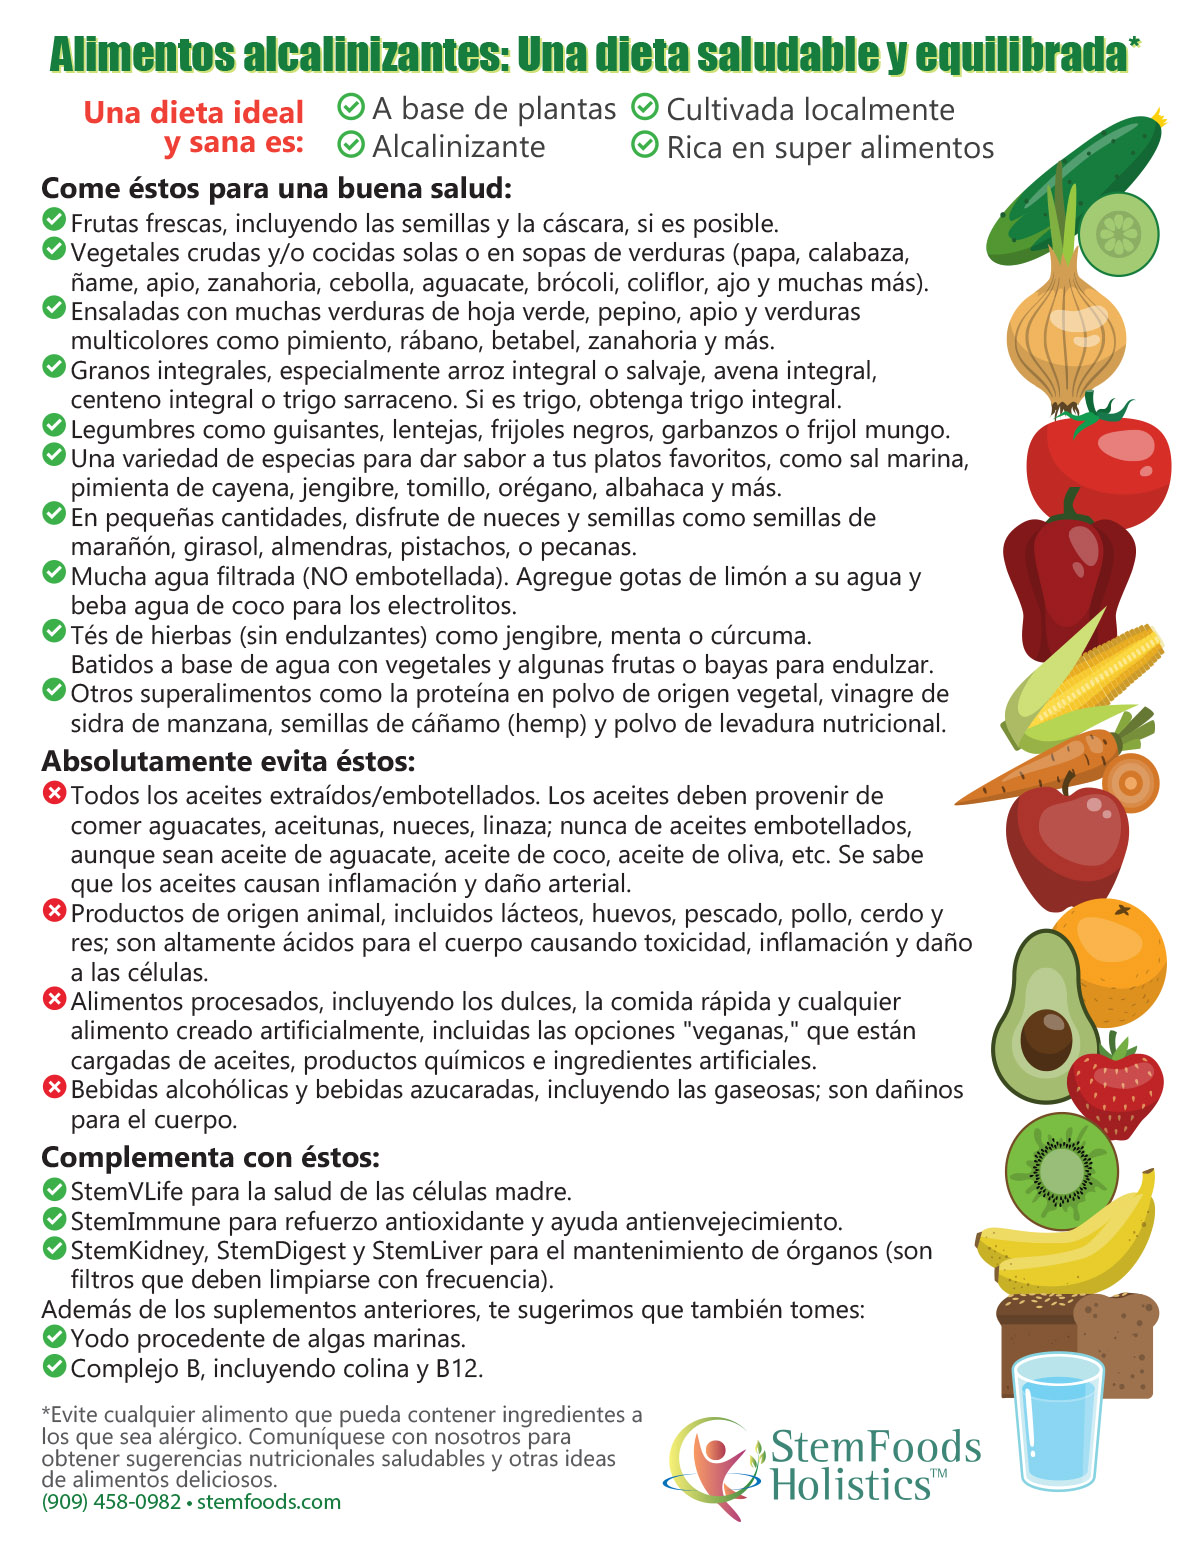 Alimentos Alcalinizantes: Una Dieta Saludable y Equilibrada*